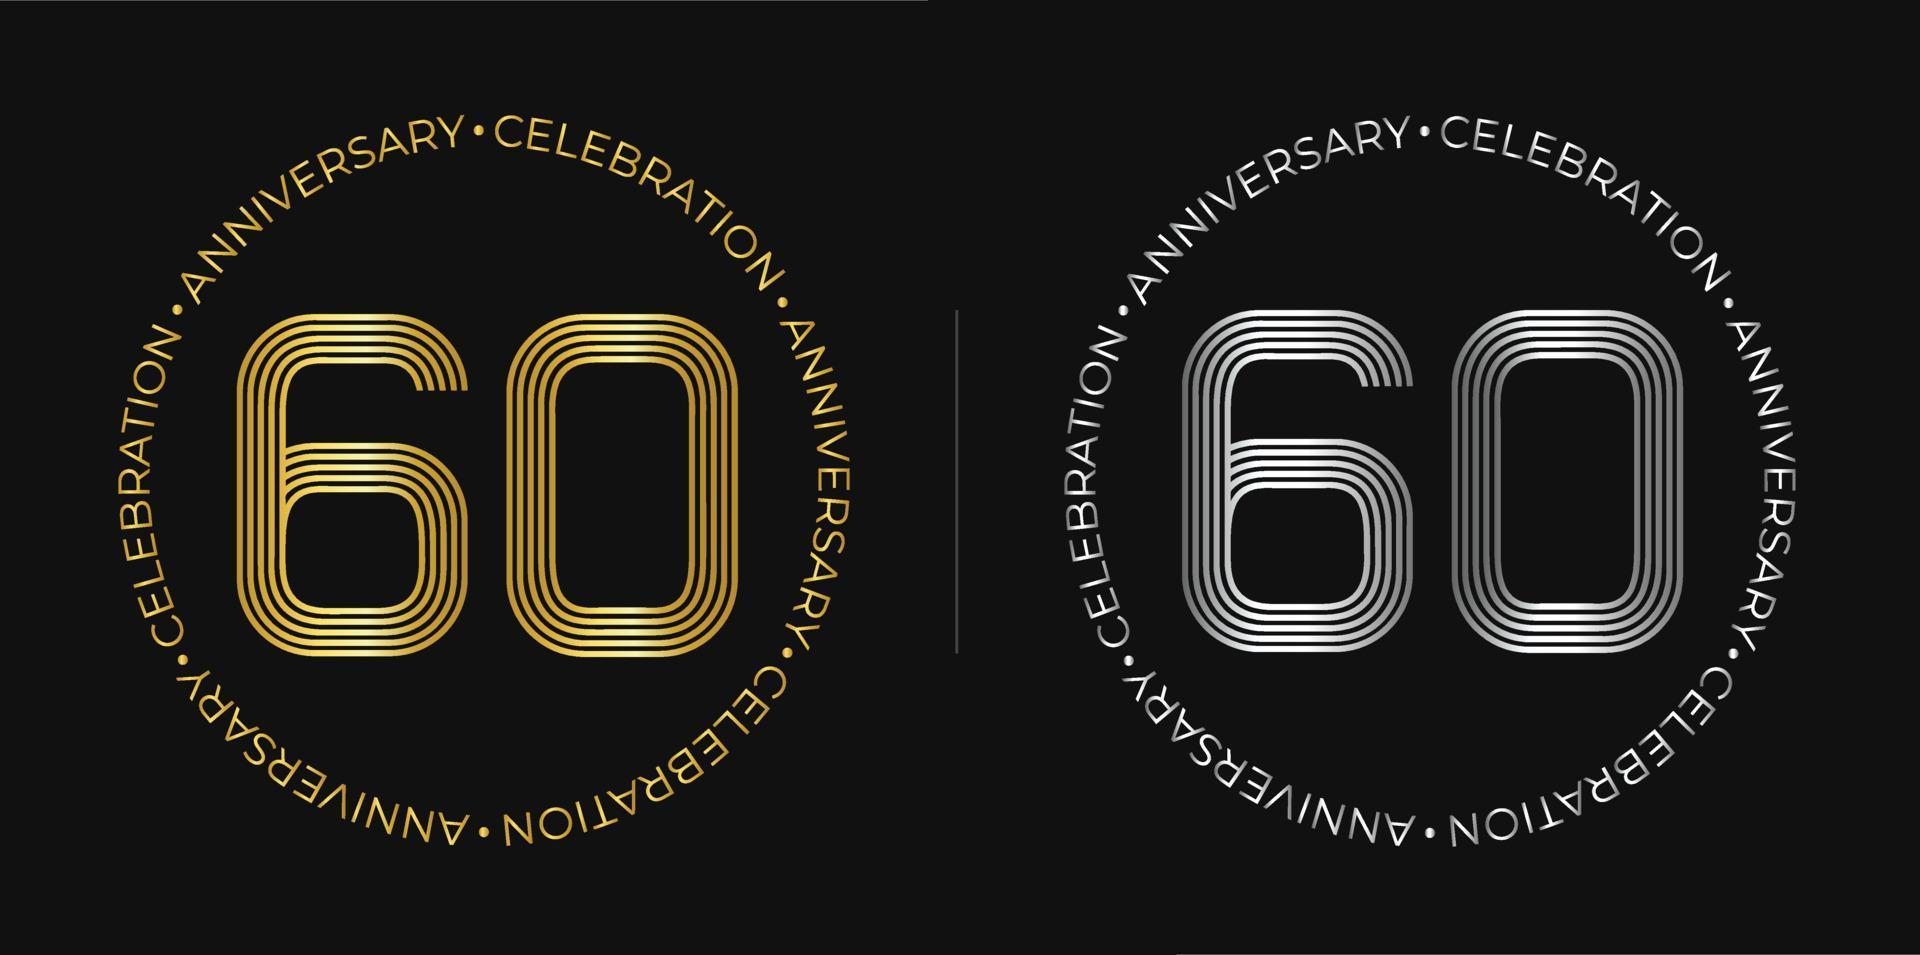 60 cumpleaños. cartel de celebración del aniversario de sesenta años en colores dorado y plateado. logo circular con diseño de números originales en líneas elegantes. vector